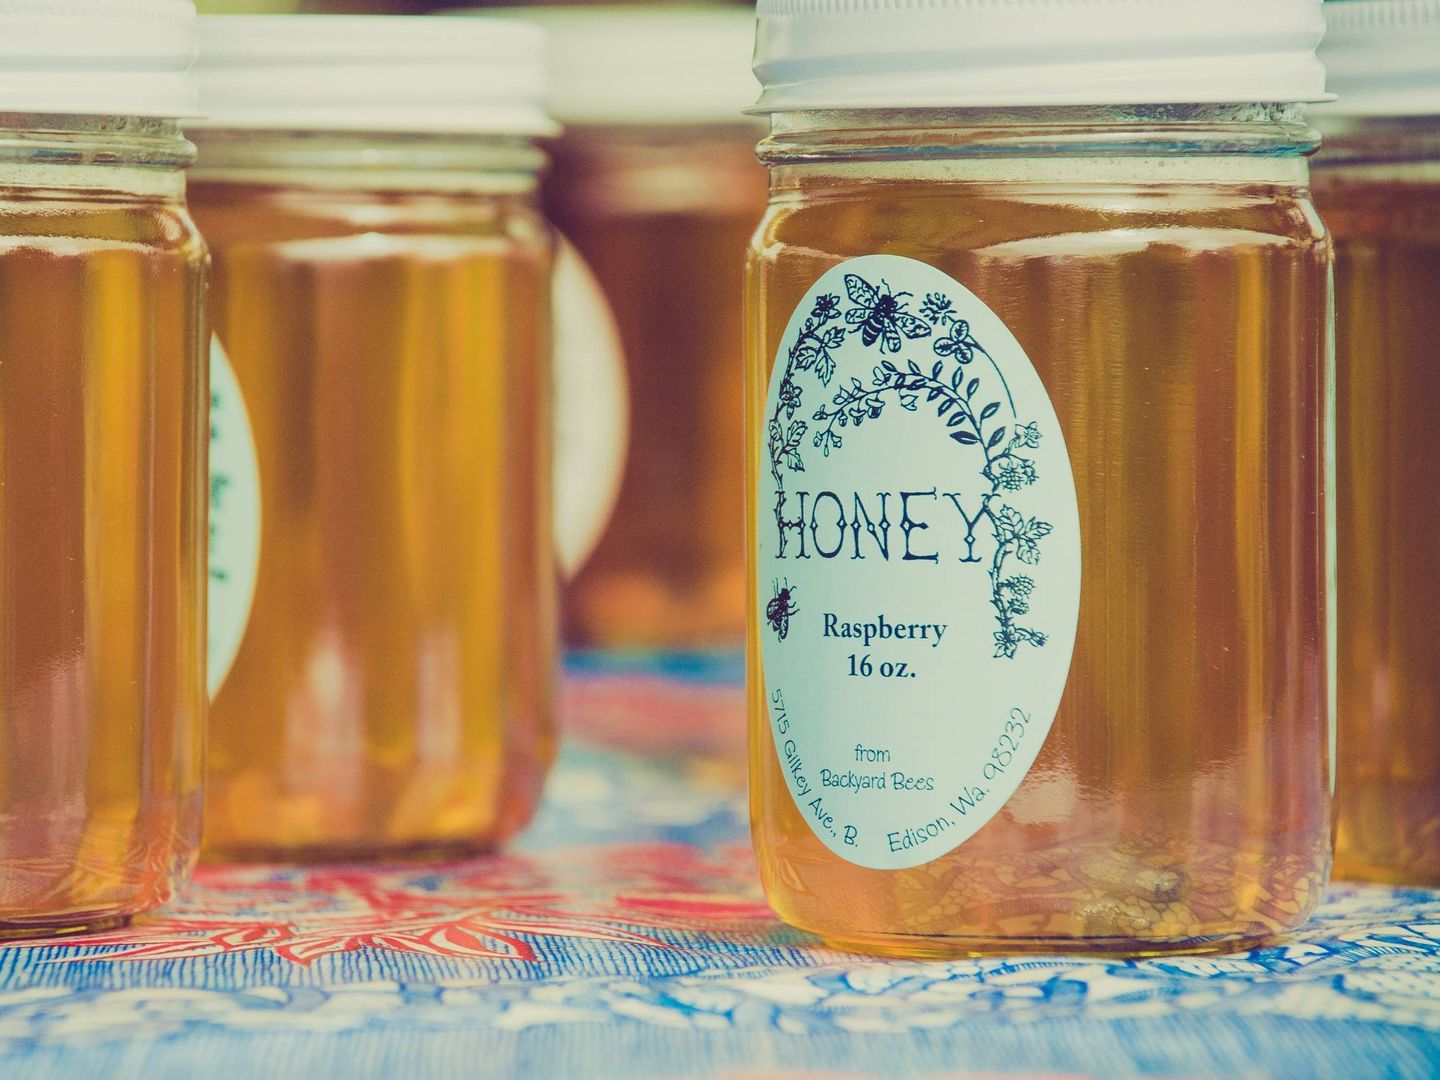 La miel siempre ha formado parte de nuestra dieta. (Amelia Bartlett para Unsplash)